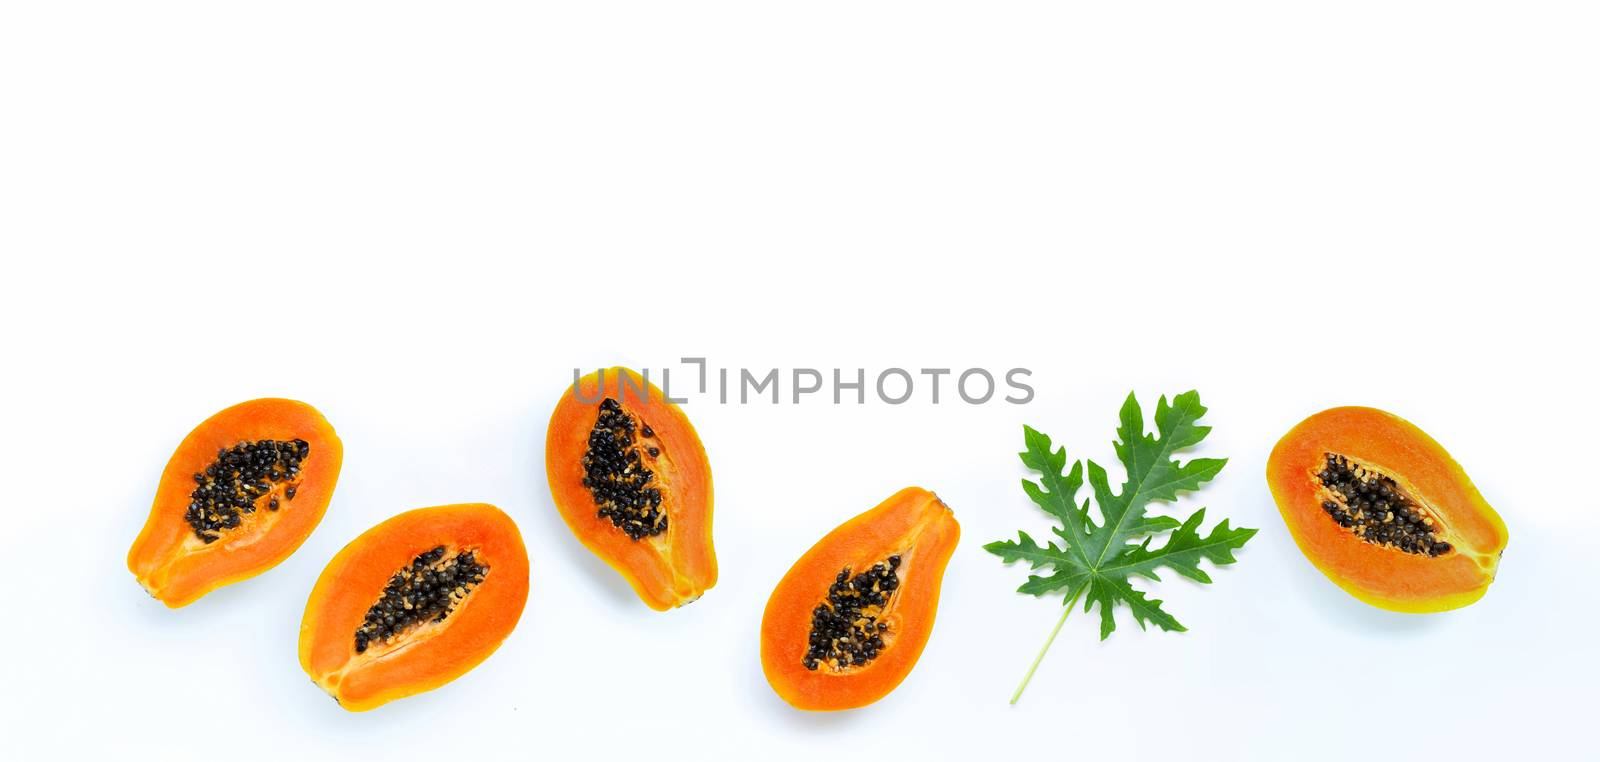 Papaya fruit on white background. by Bowonpat